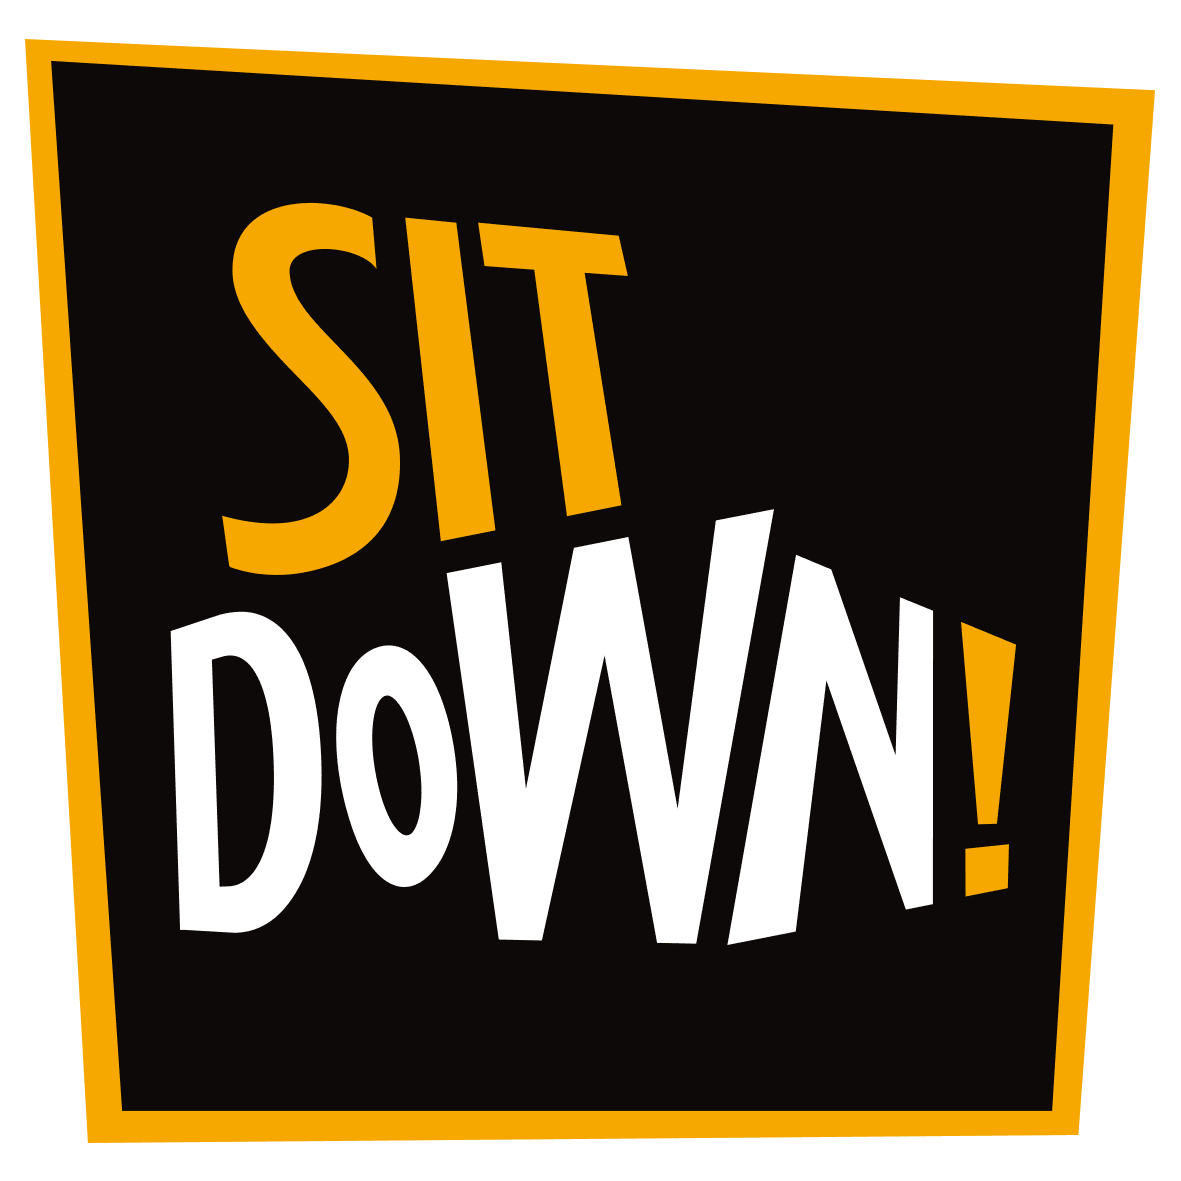 Brand: Sit Down!